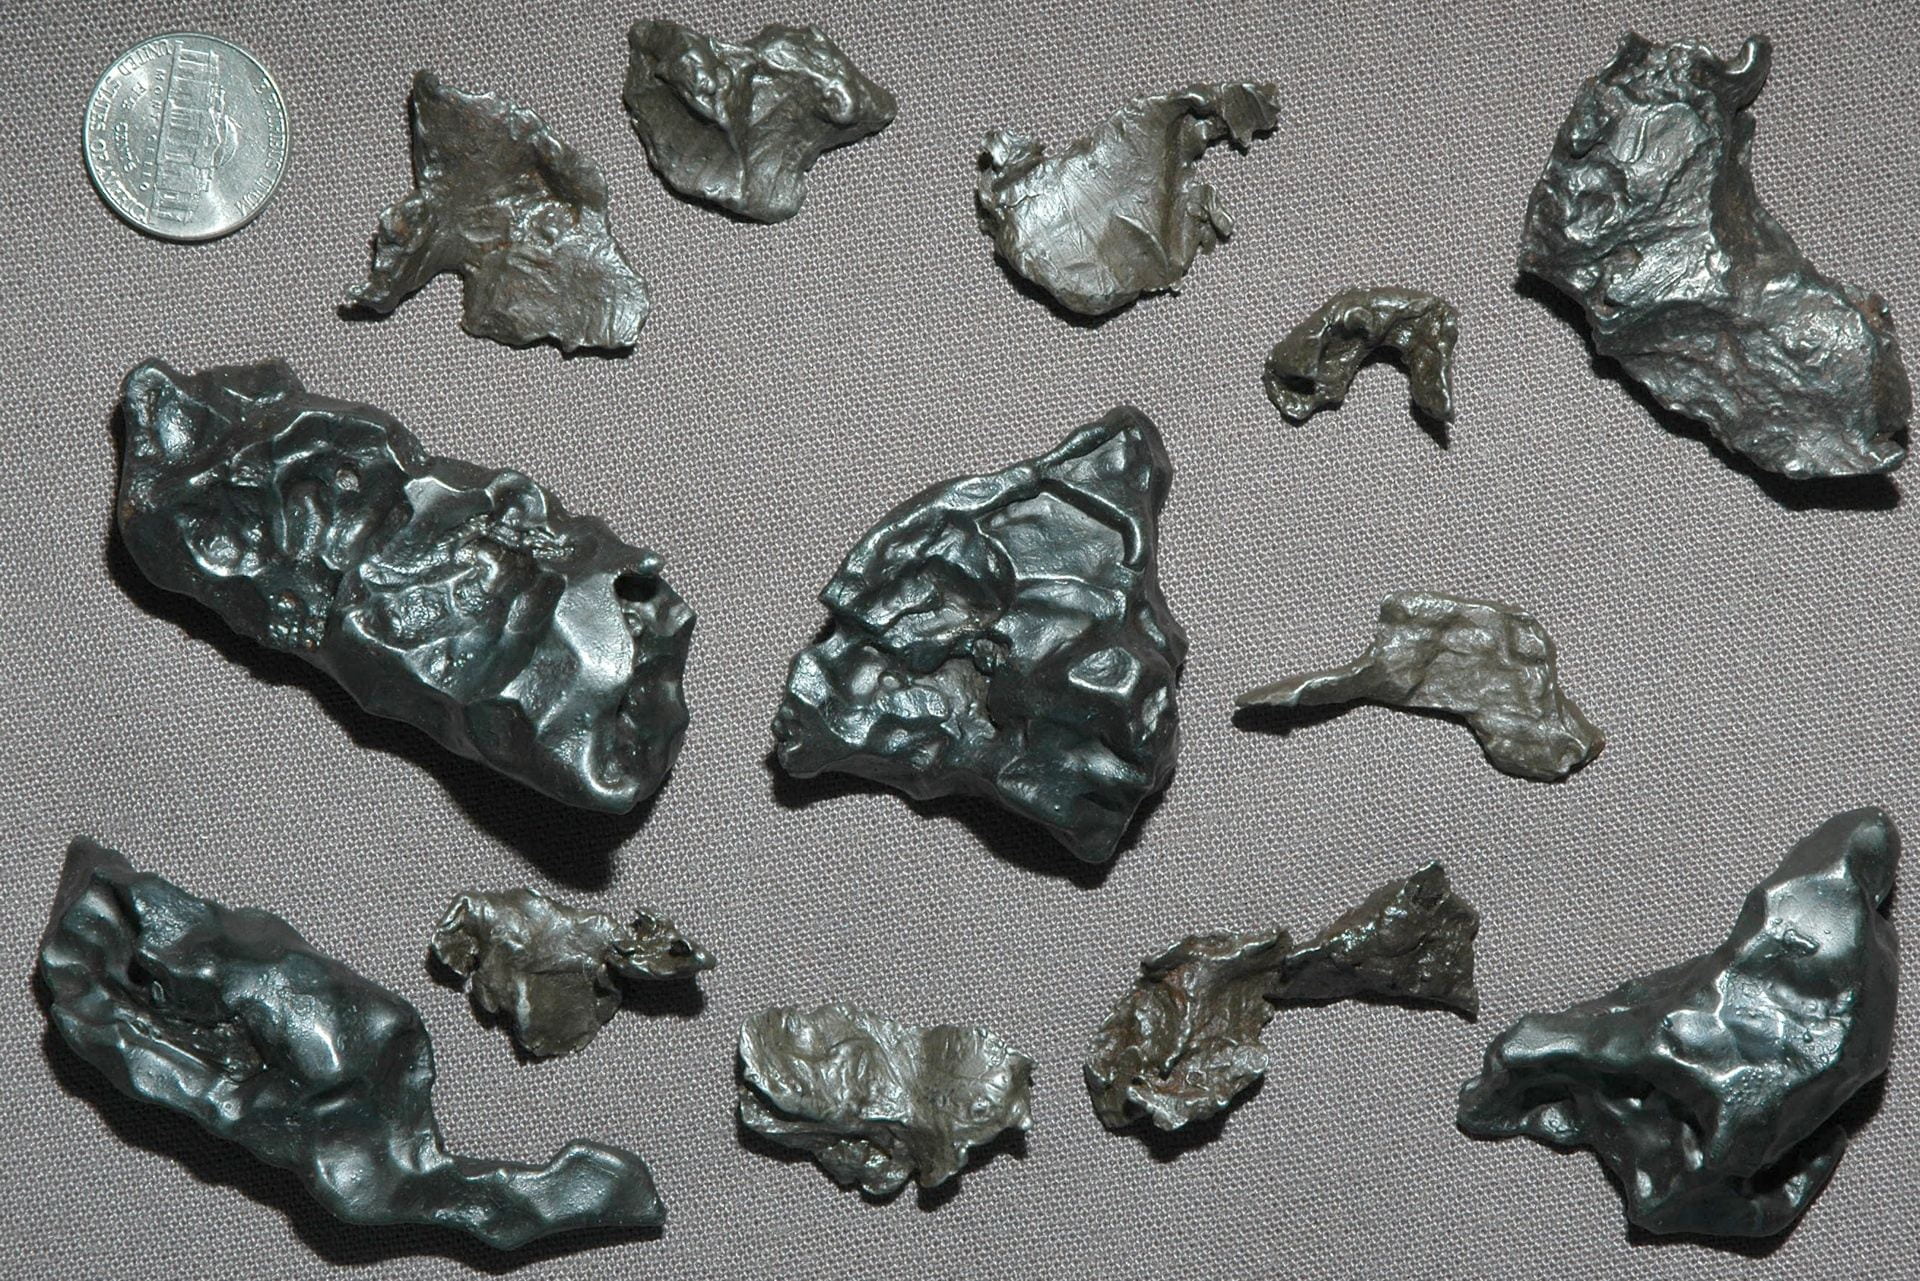 fragments of meteorite Sikhote-Alin